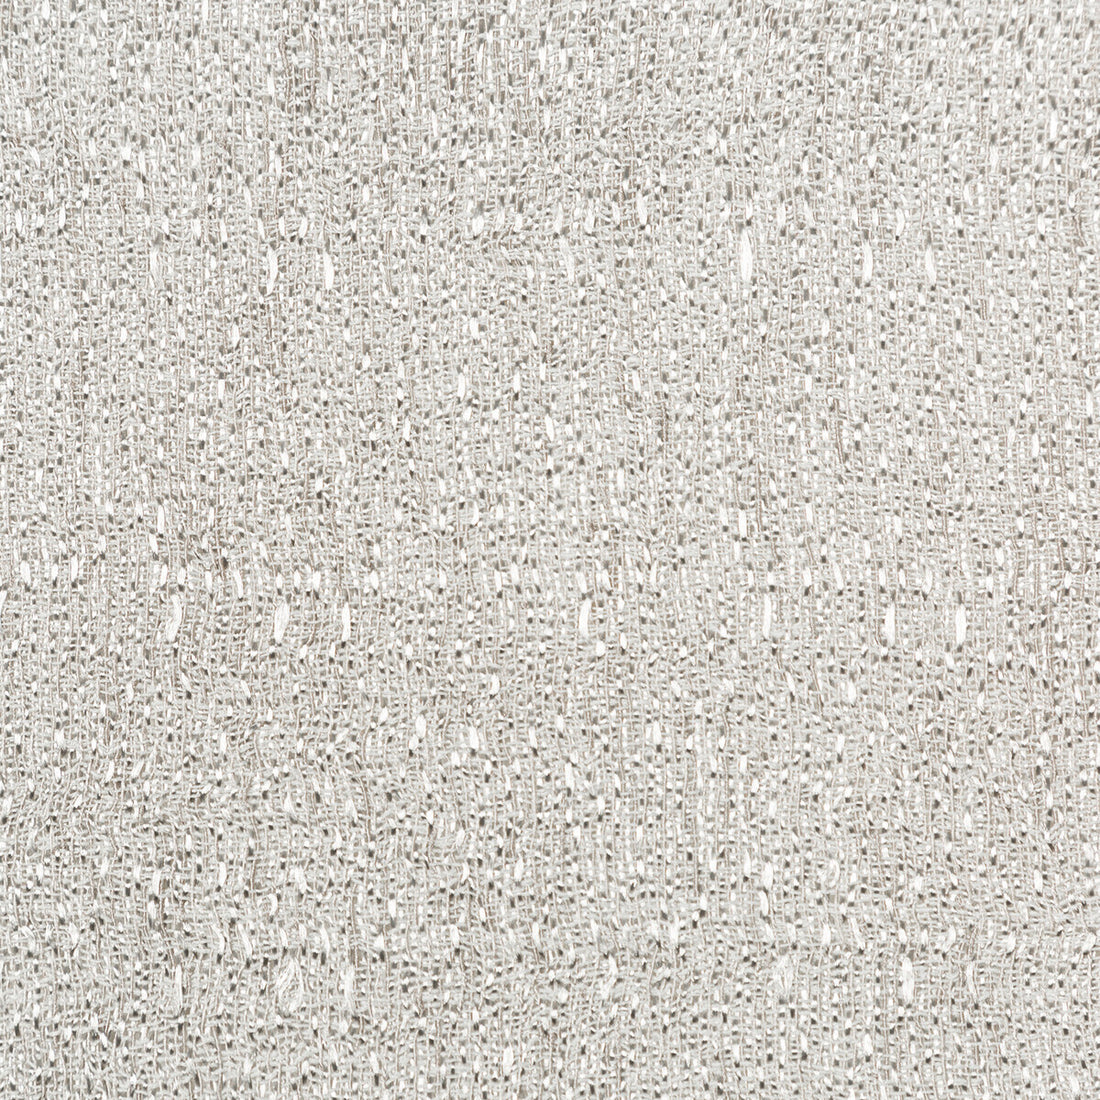 Kravet Basics fabric in 4764-11 color - pattern 4764.11.0 - by Kravet Basics